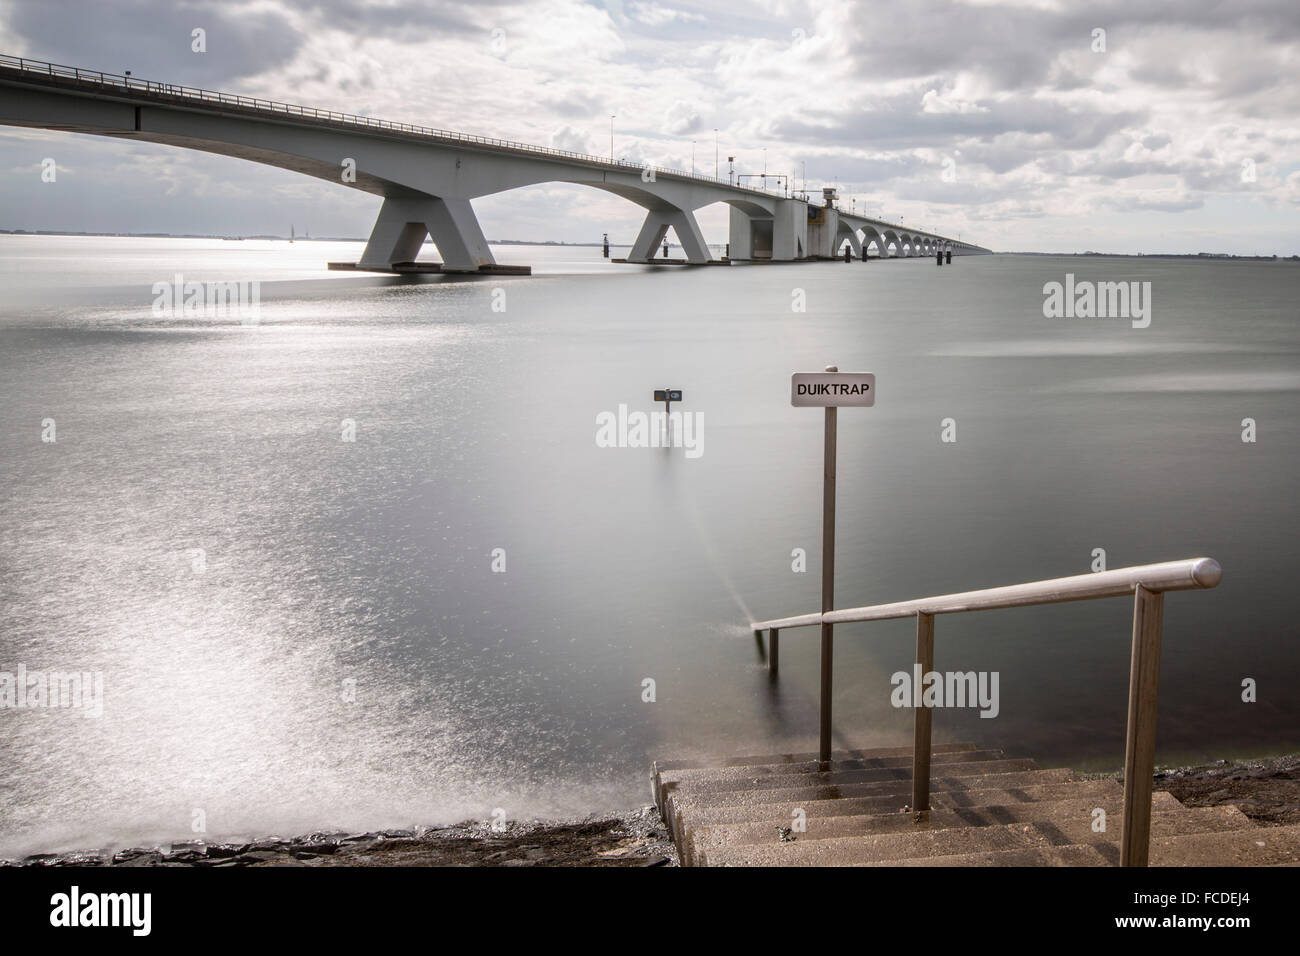 Niederlande, Zierikzee, Zeeland-Brücke. Oosterschelde-Mündung. Schouwen-Duiveland und Noord-Beveland. Langzeitbelichtung Stockfoto